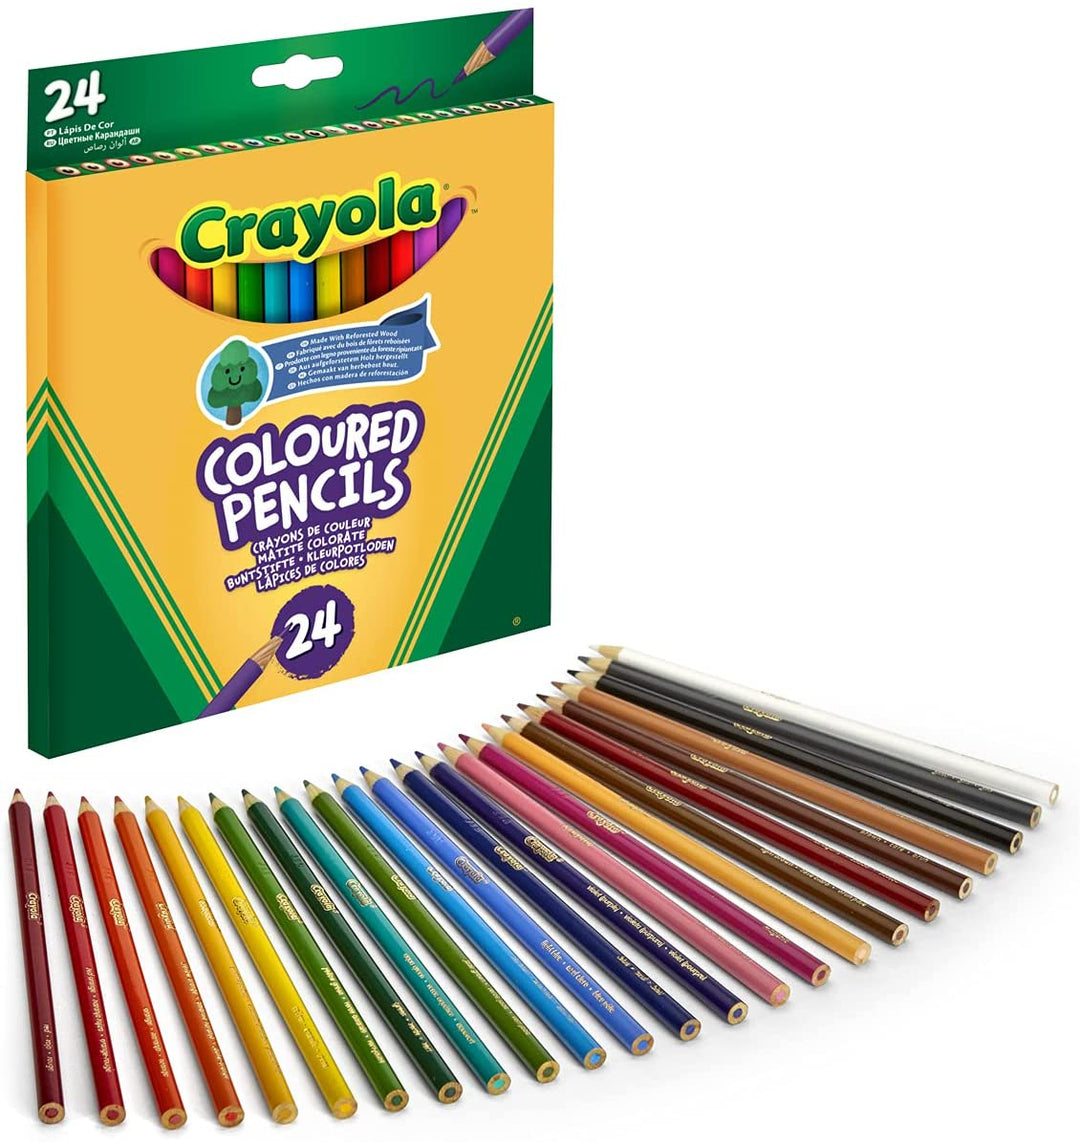 Crayola - 24 Crayola Coloured Pencils